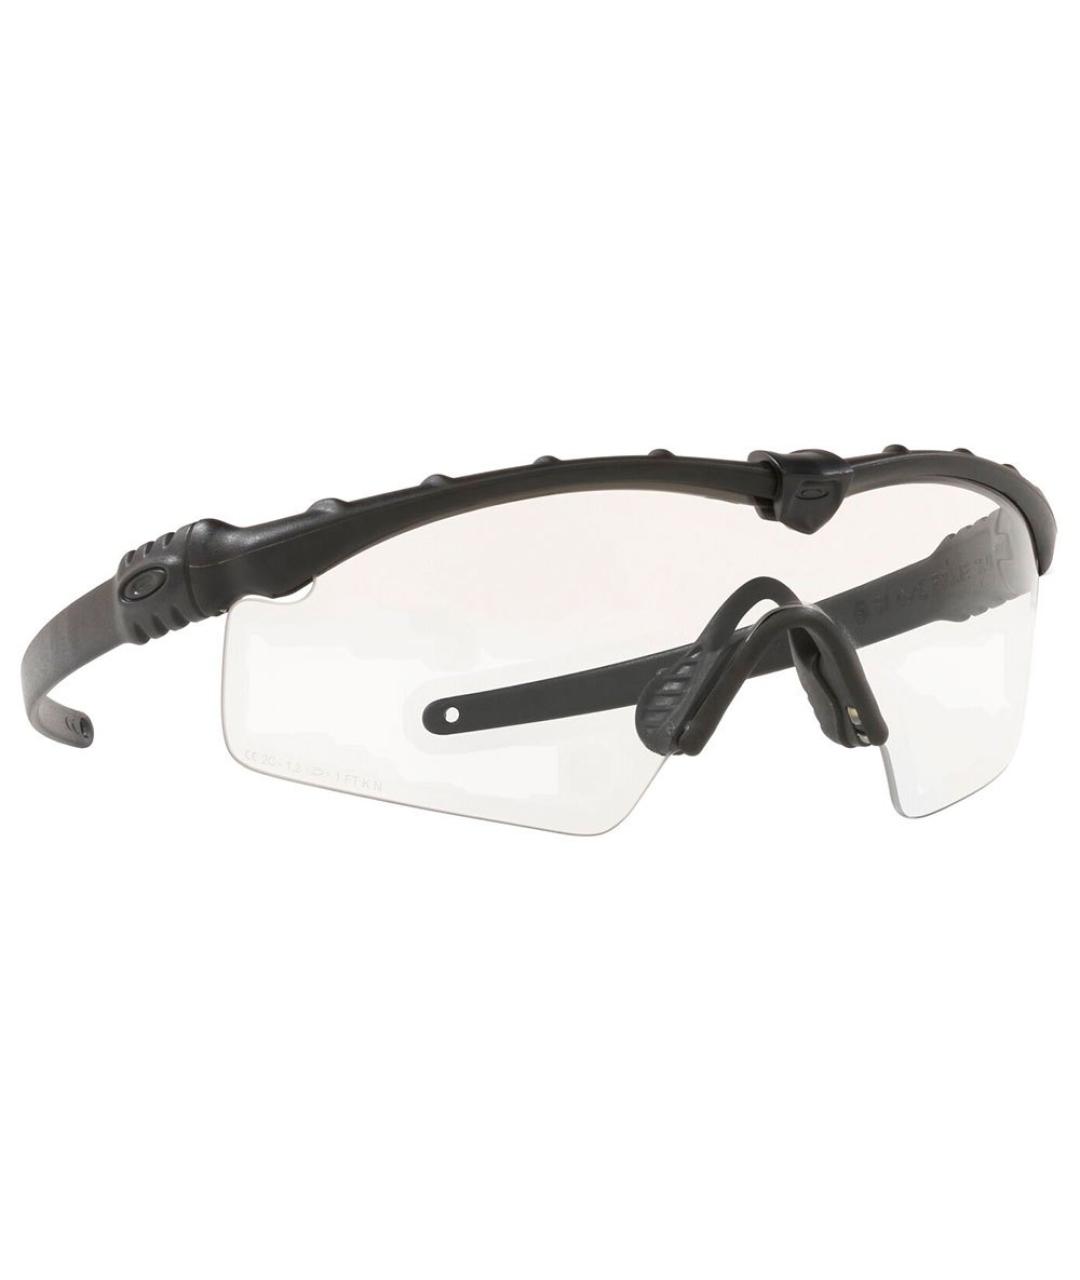 OAKLEY BY SAMUEL ROSS Черные пластиковые солнцезащитные очки, фото 2